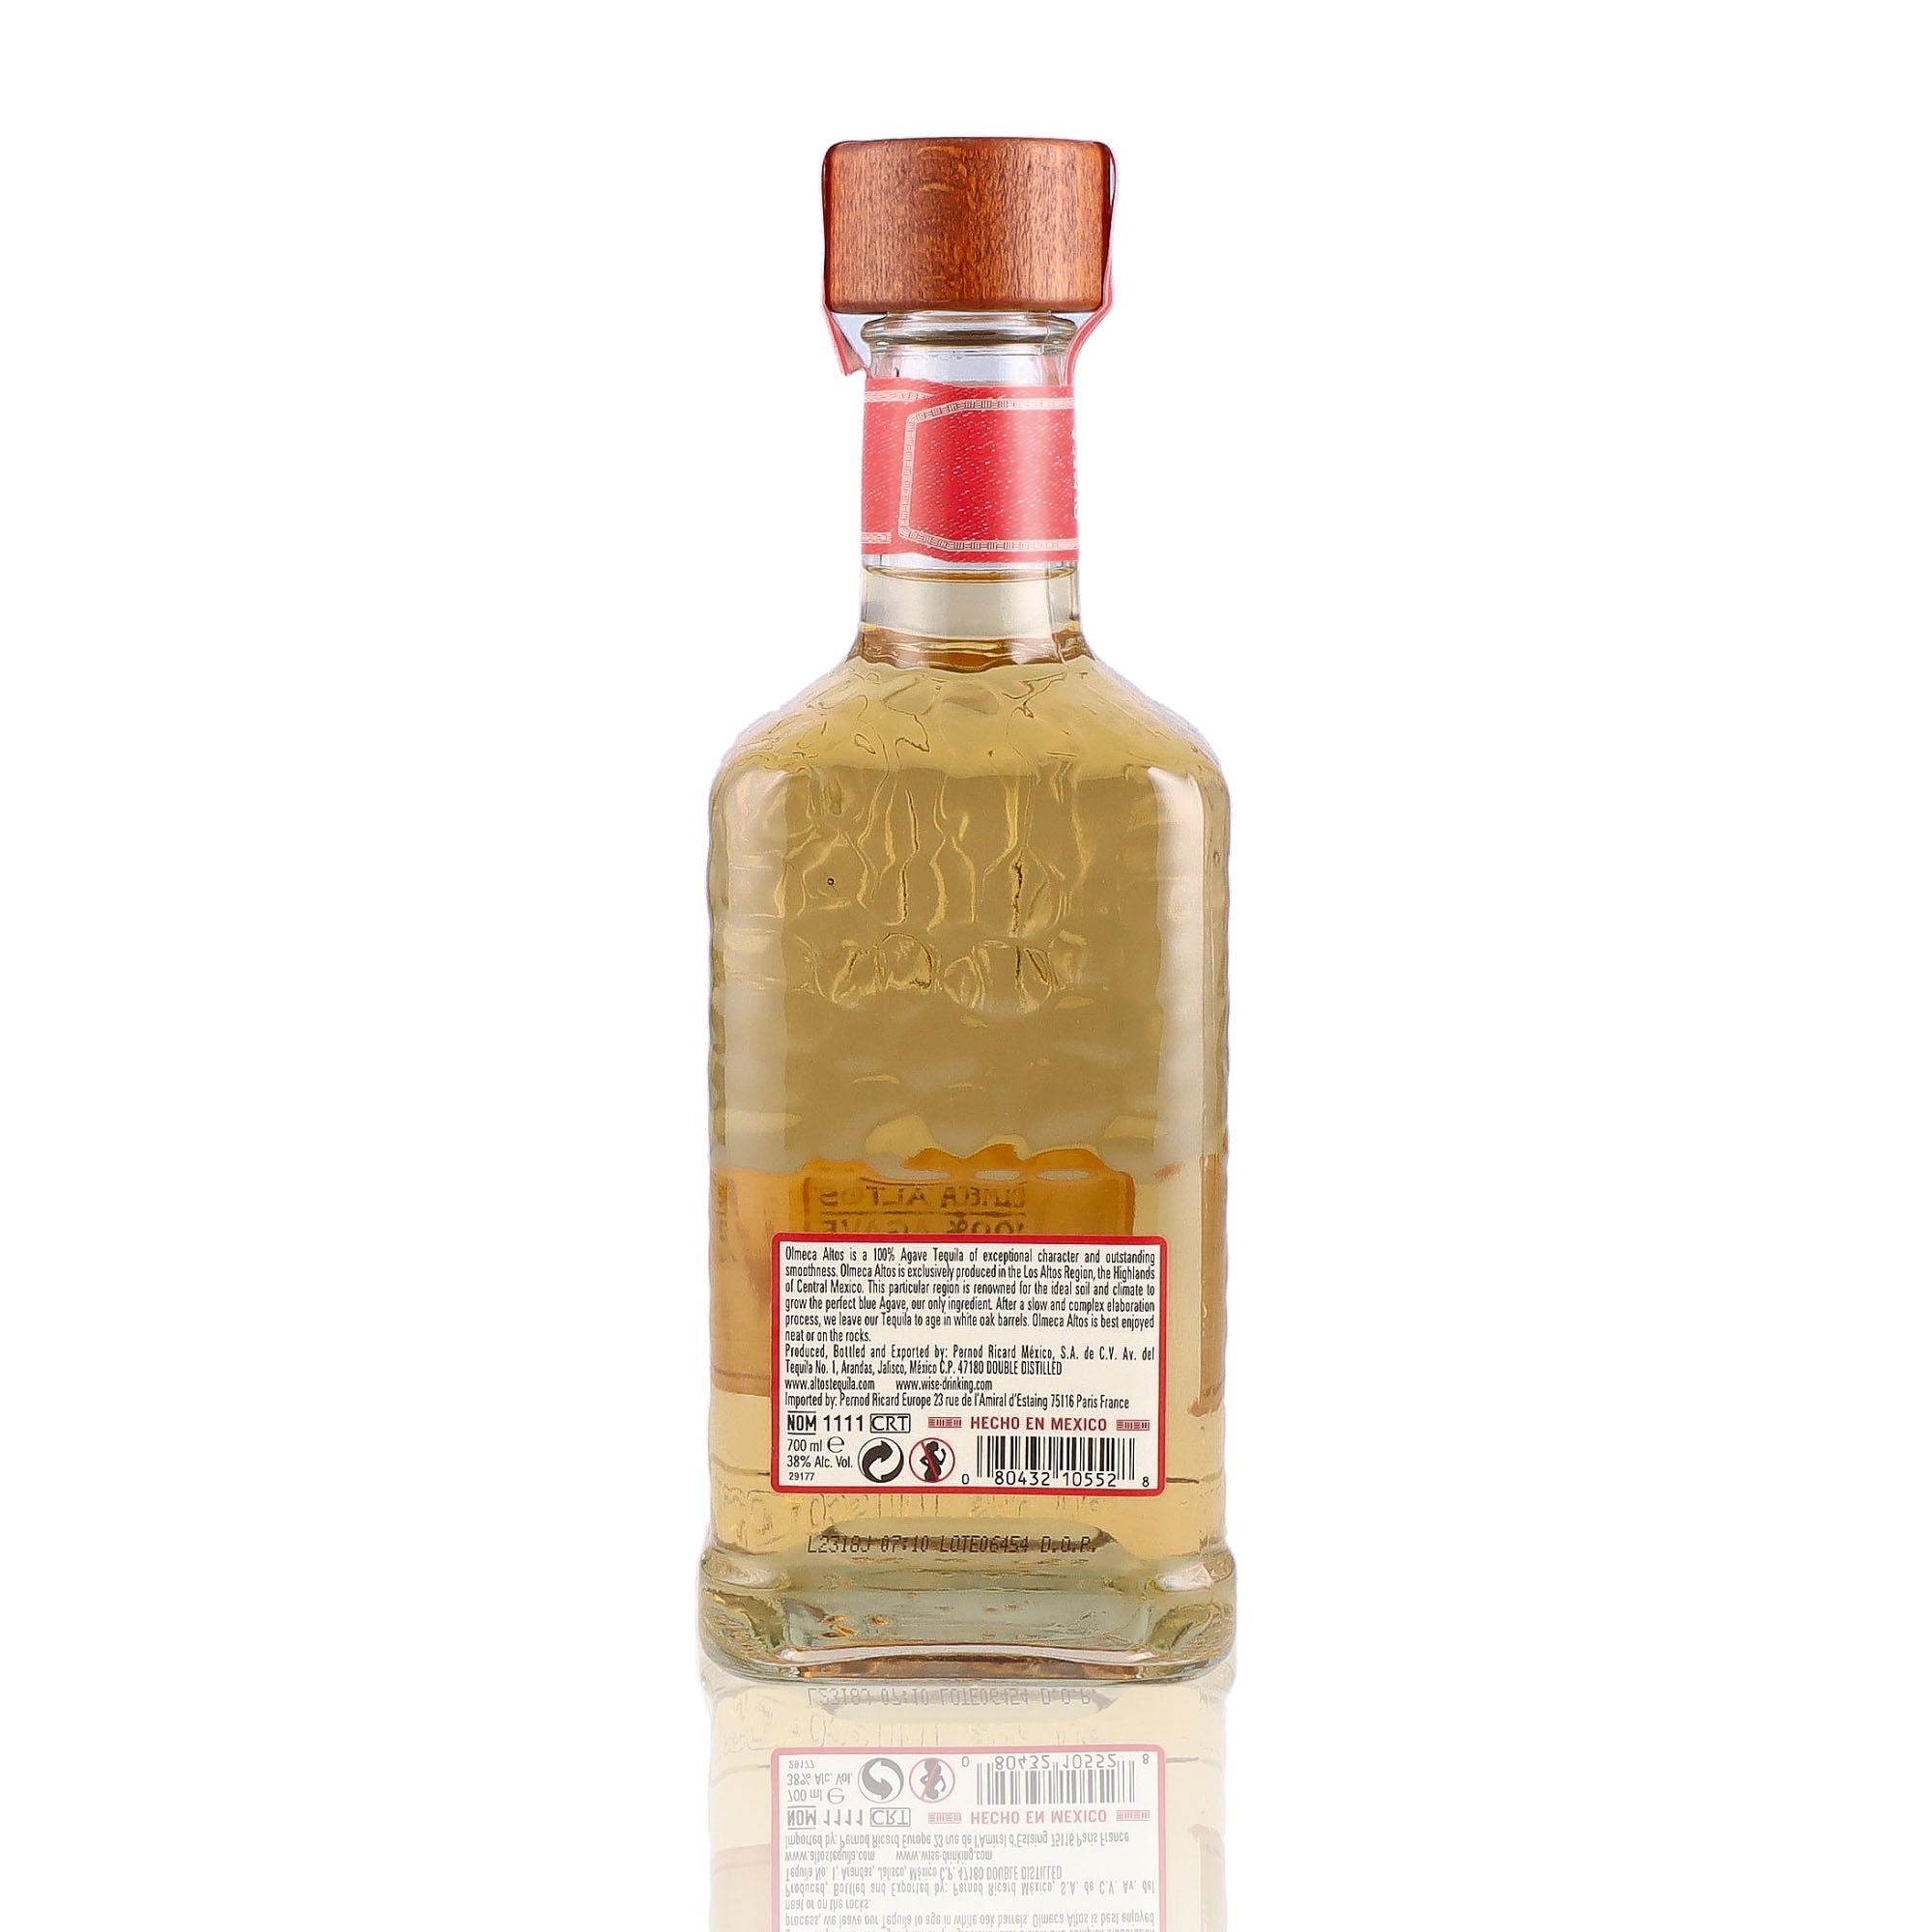 Une bouteille de Tequila, de la marque Olmeca Altos, nommée Reposado.